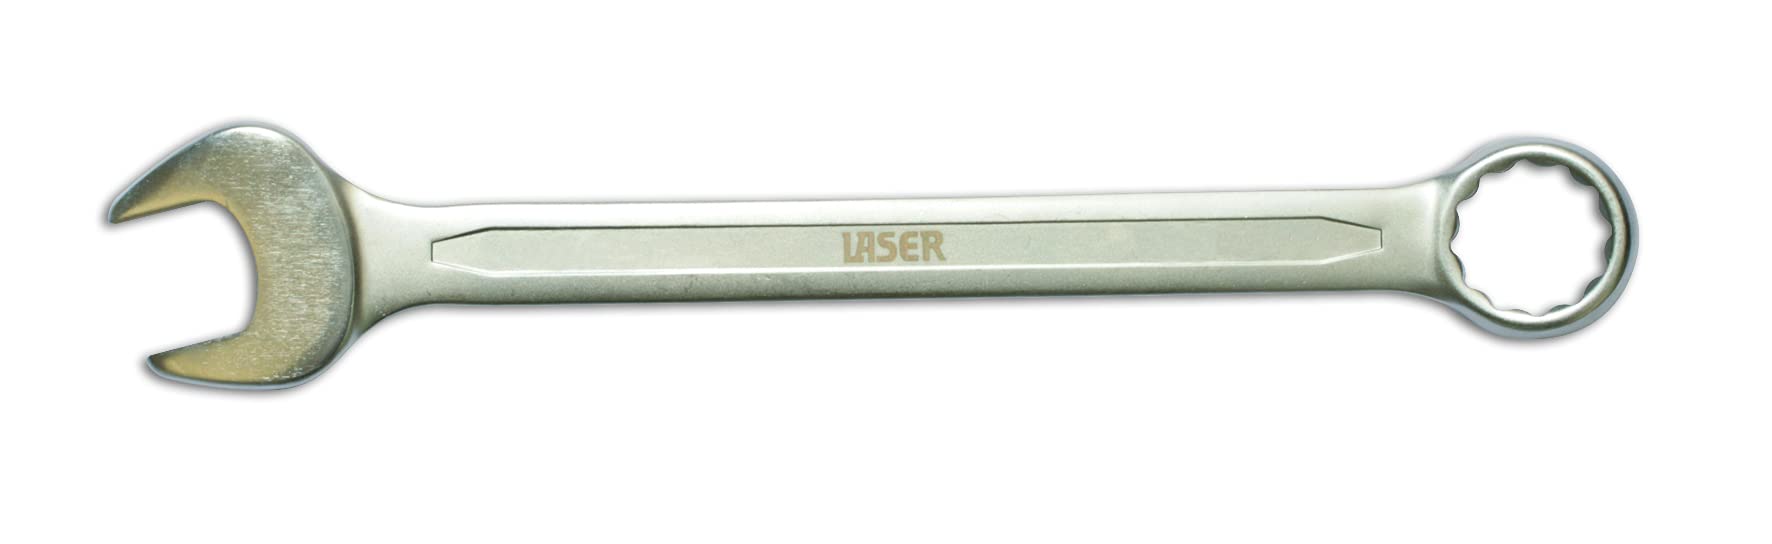 Laser 3074 3074 Kombinationsschlüssel - 26 mm von Laser